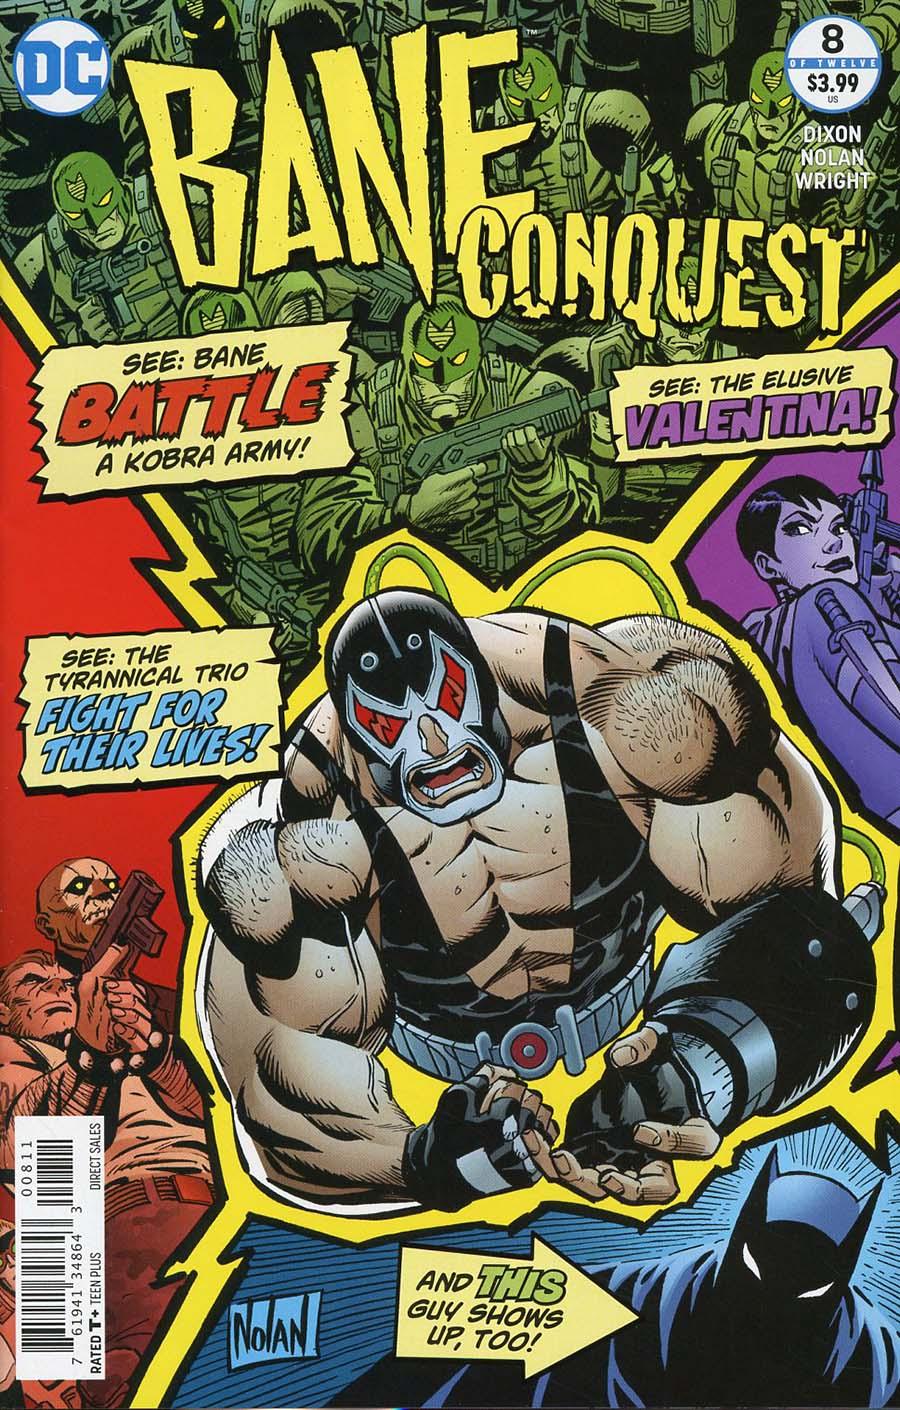 Bane Conquest Vol. 1 #8